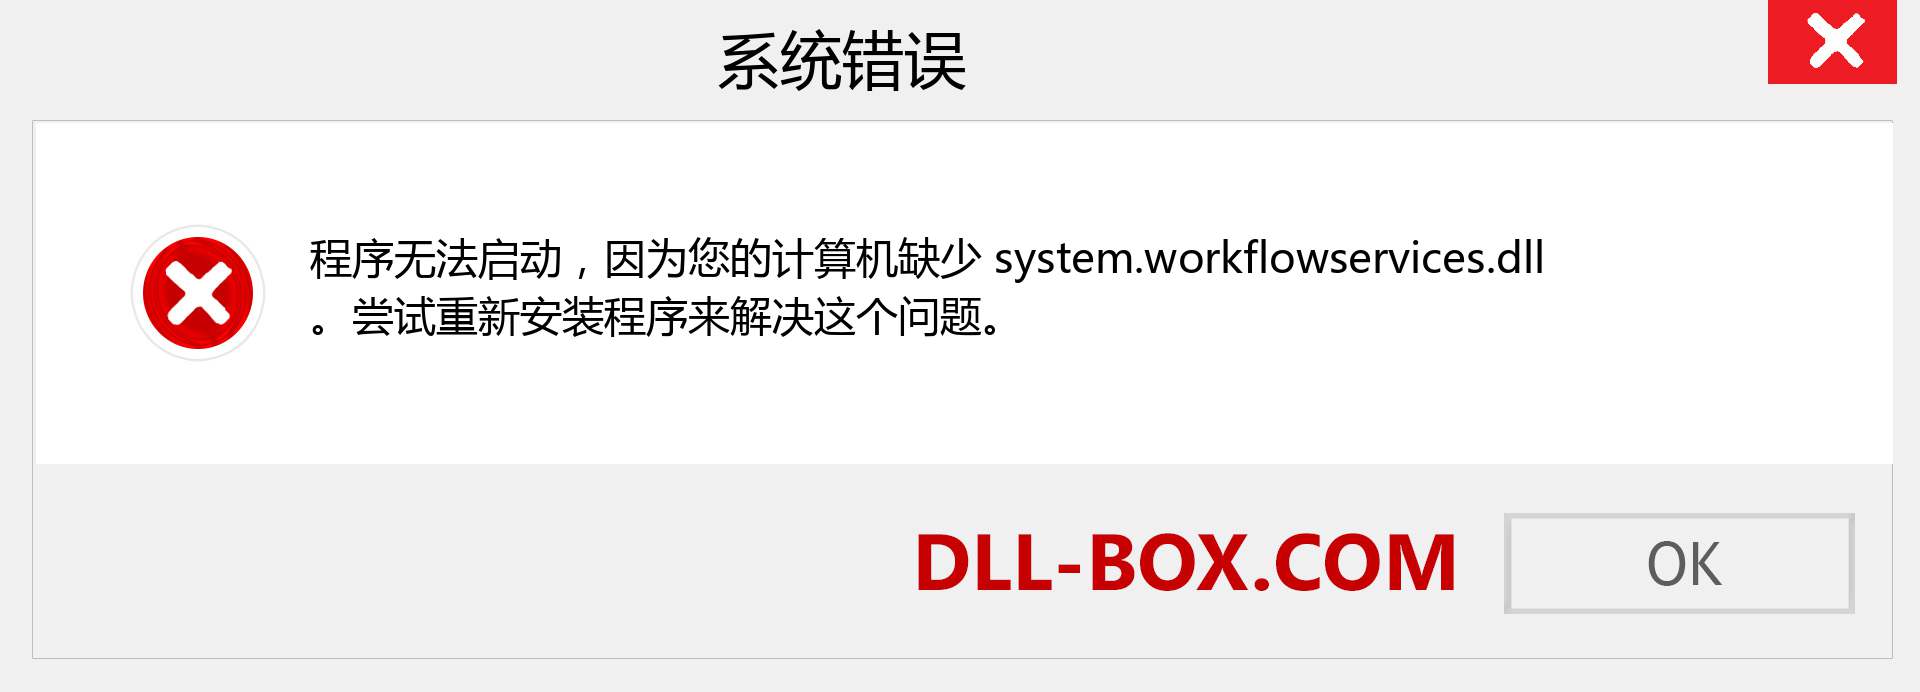 system.workflowservices.dll 文件丢失？。 适用于 Windows 7、8、10 的下载 - 修复 Windows、照片、图像上的 system.workflowservices dll 丢失错误